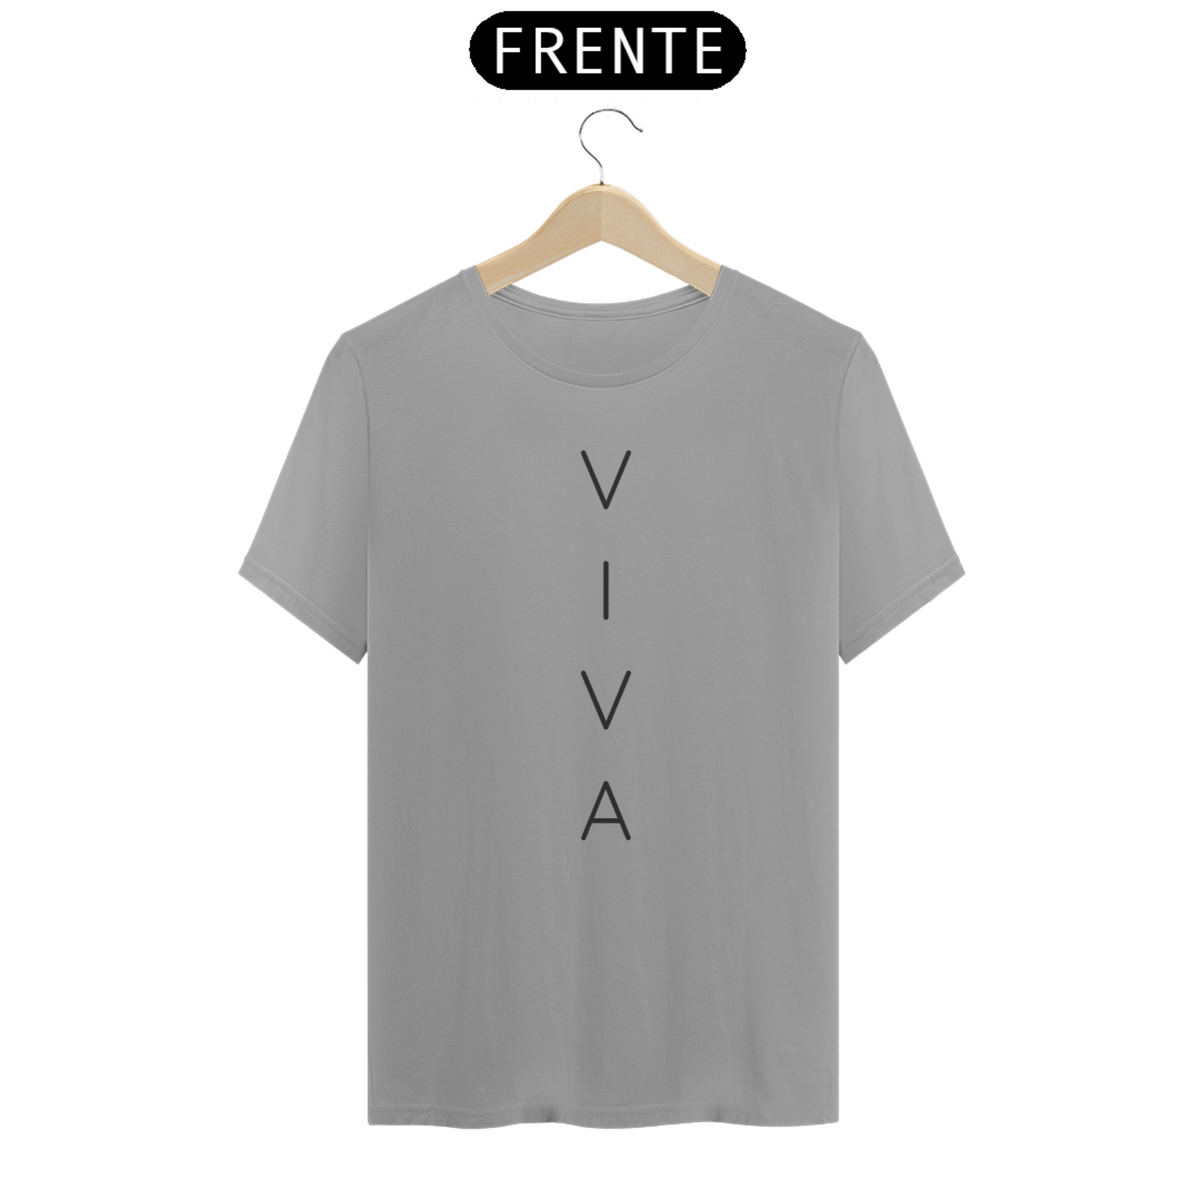 Nome do produto: Camiseta viva 2